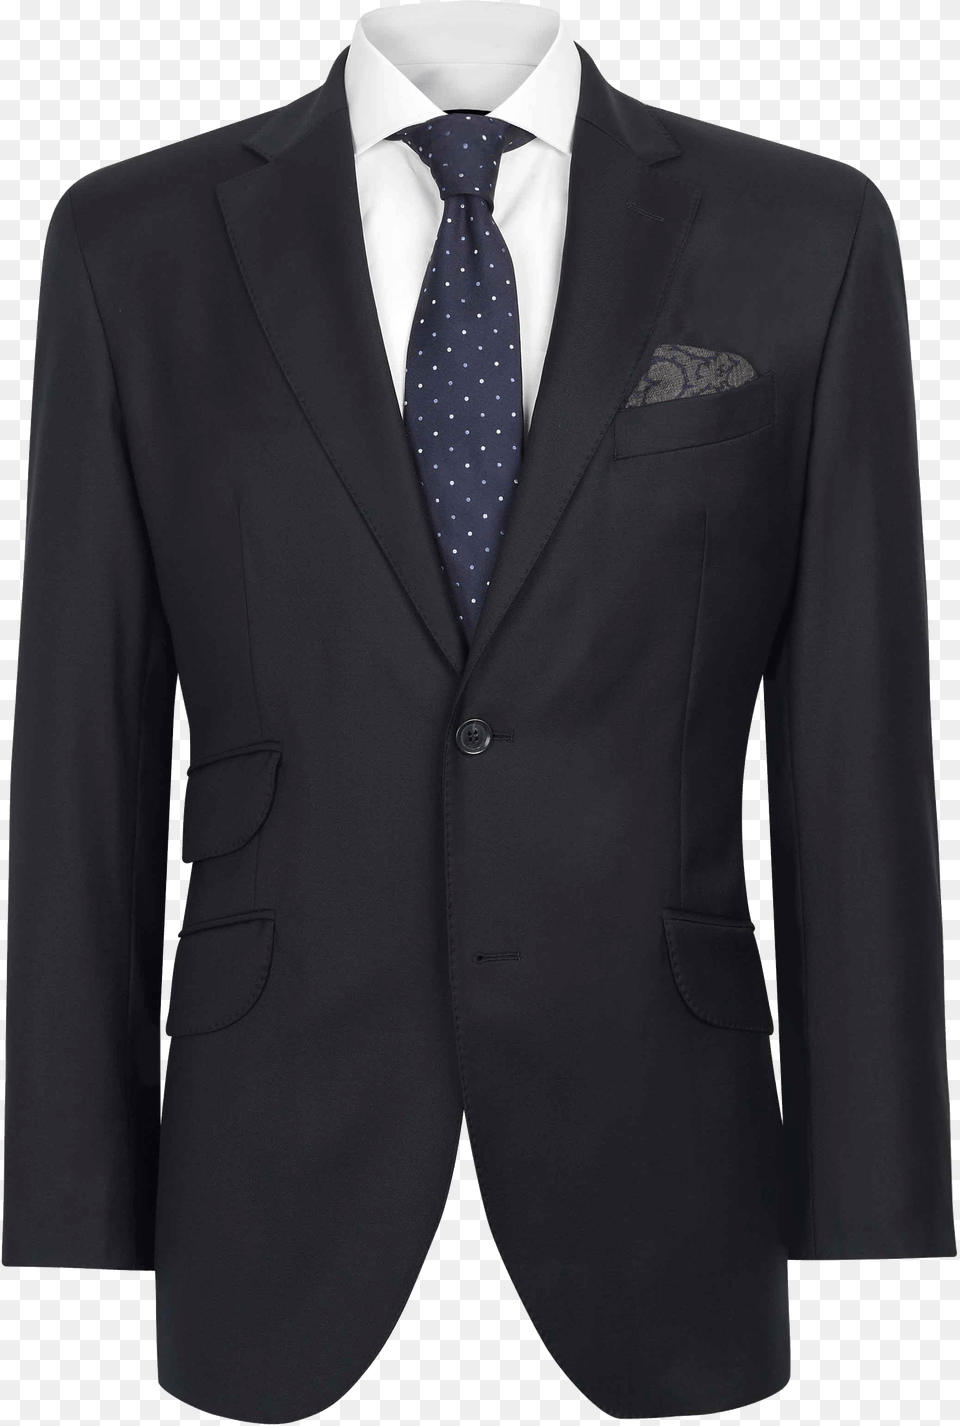 Hd Transparent Suit Suit Tie For Photoshop, Accessories, Blazer, Clothing, Coat Png Image